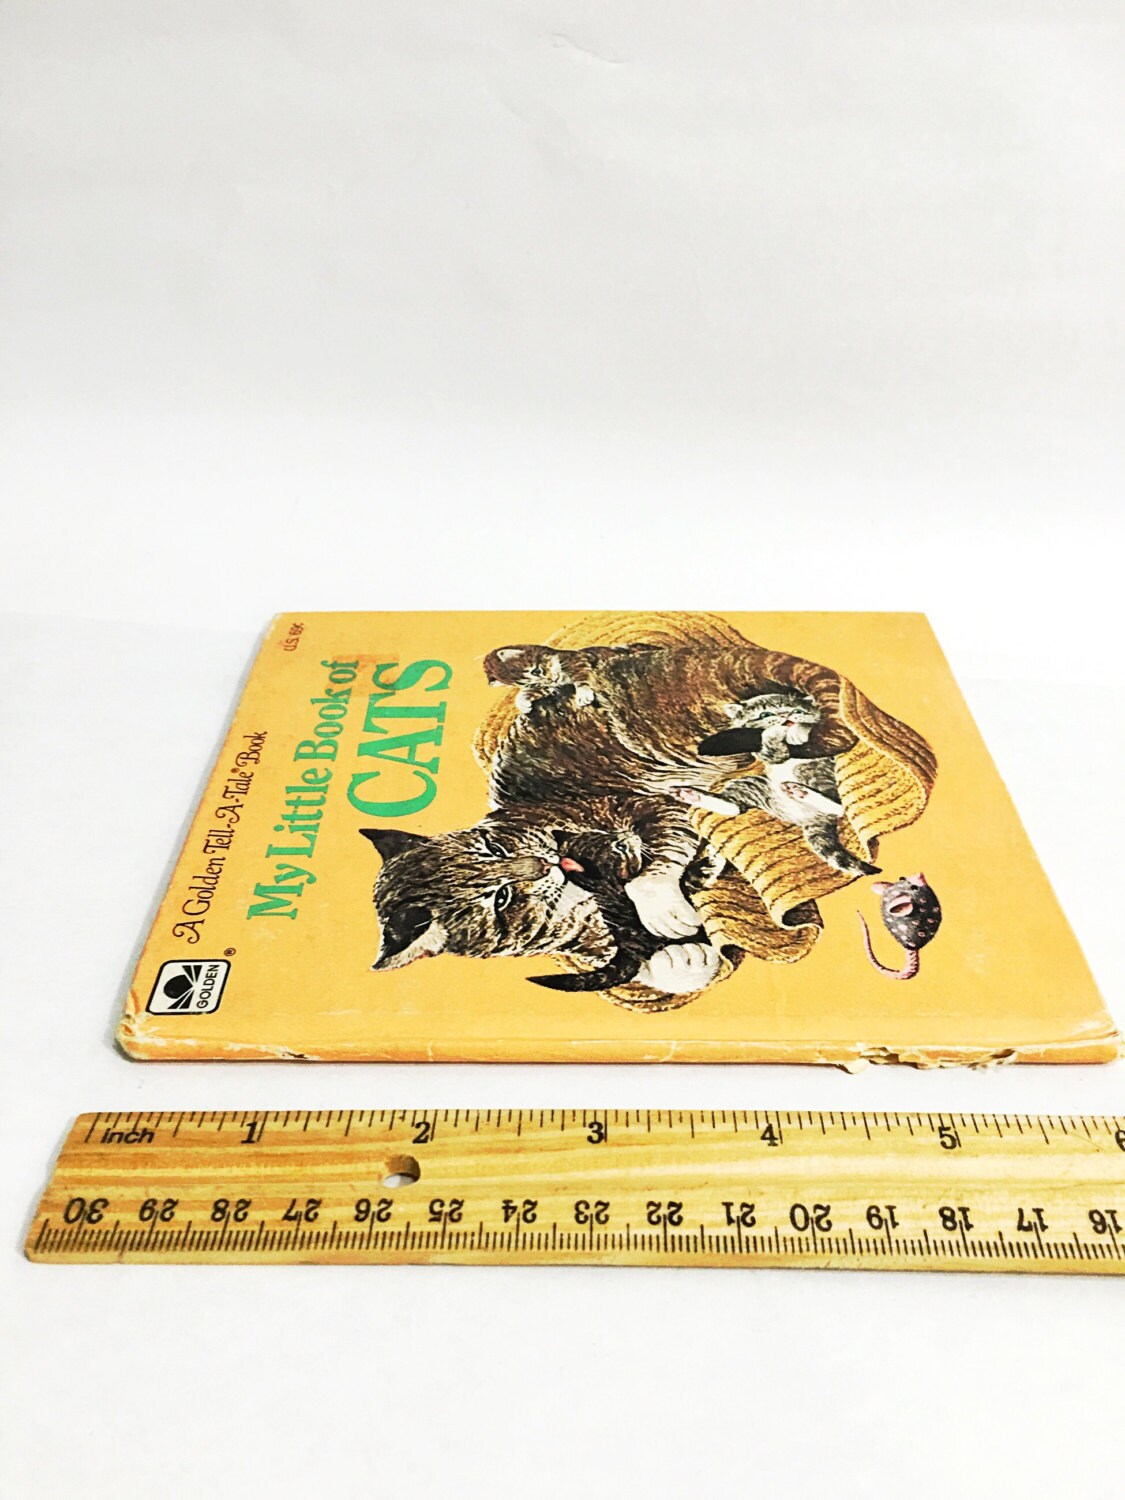 1976 My Little Book of Cats Golden Tell a Tale Book Little Golden Book Yellow kitten kitty vintage children's book